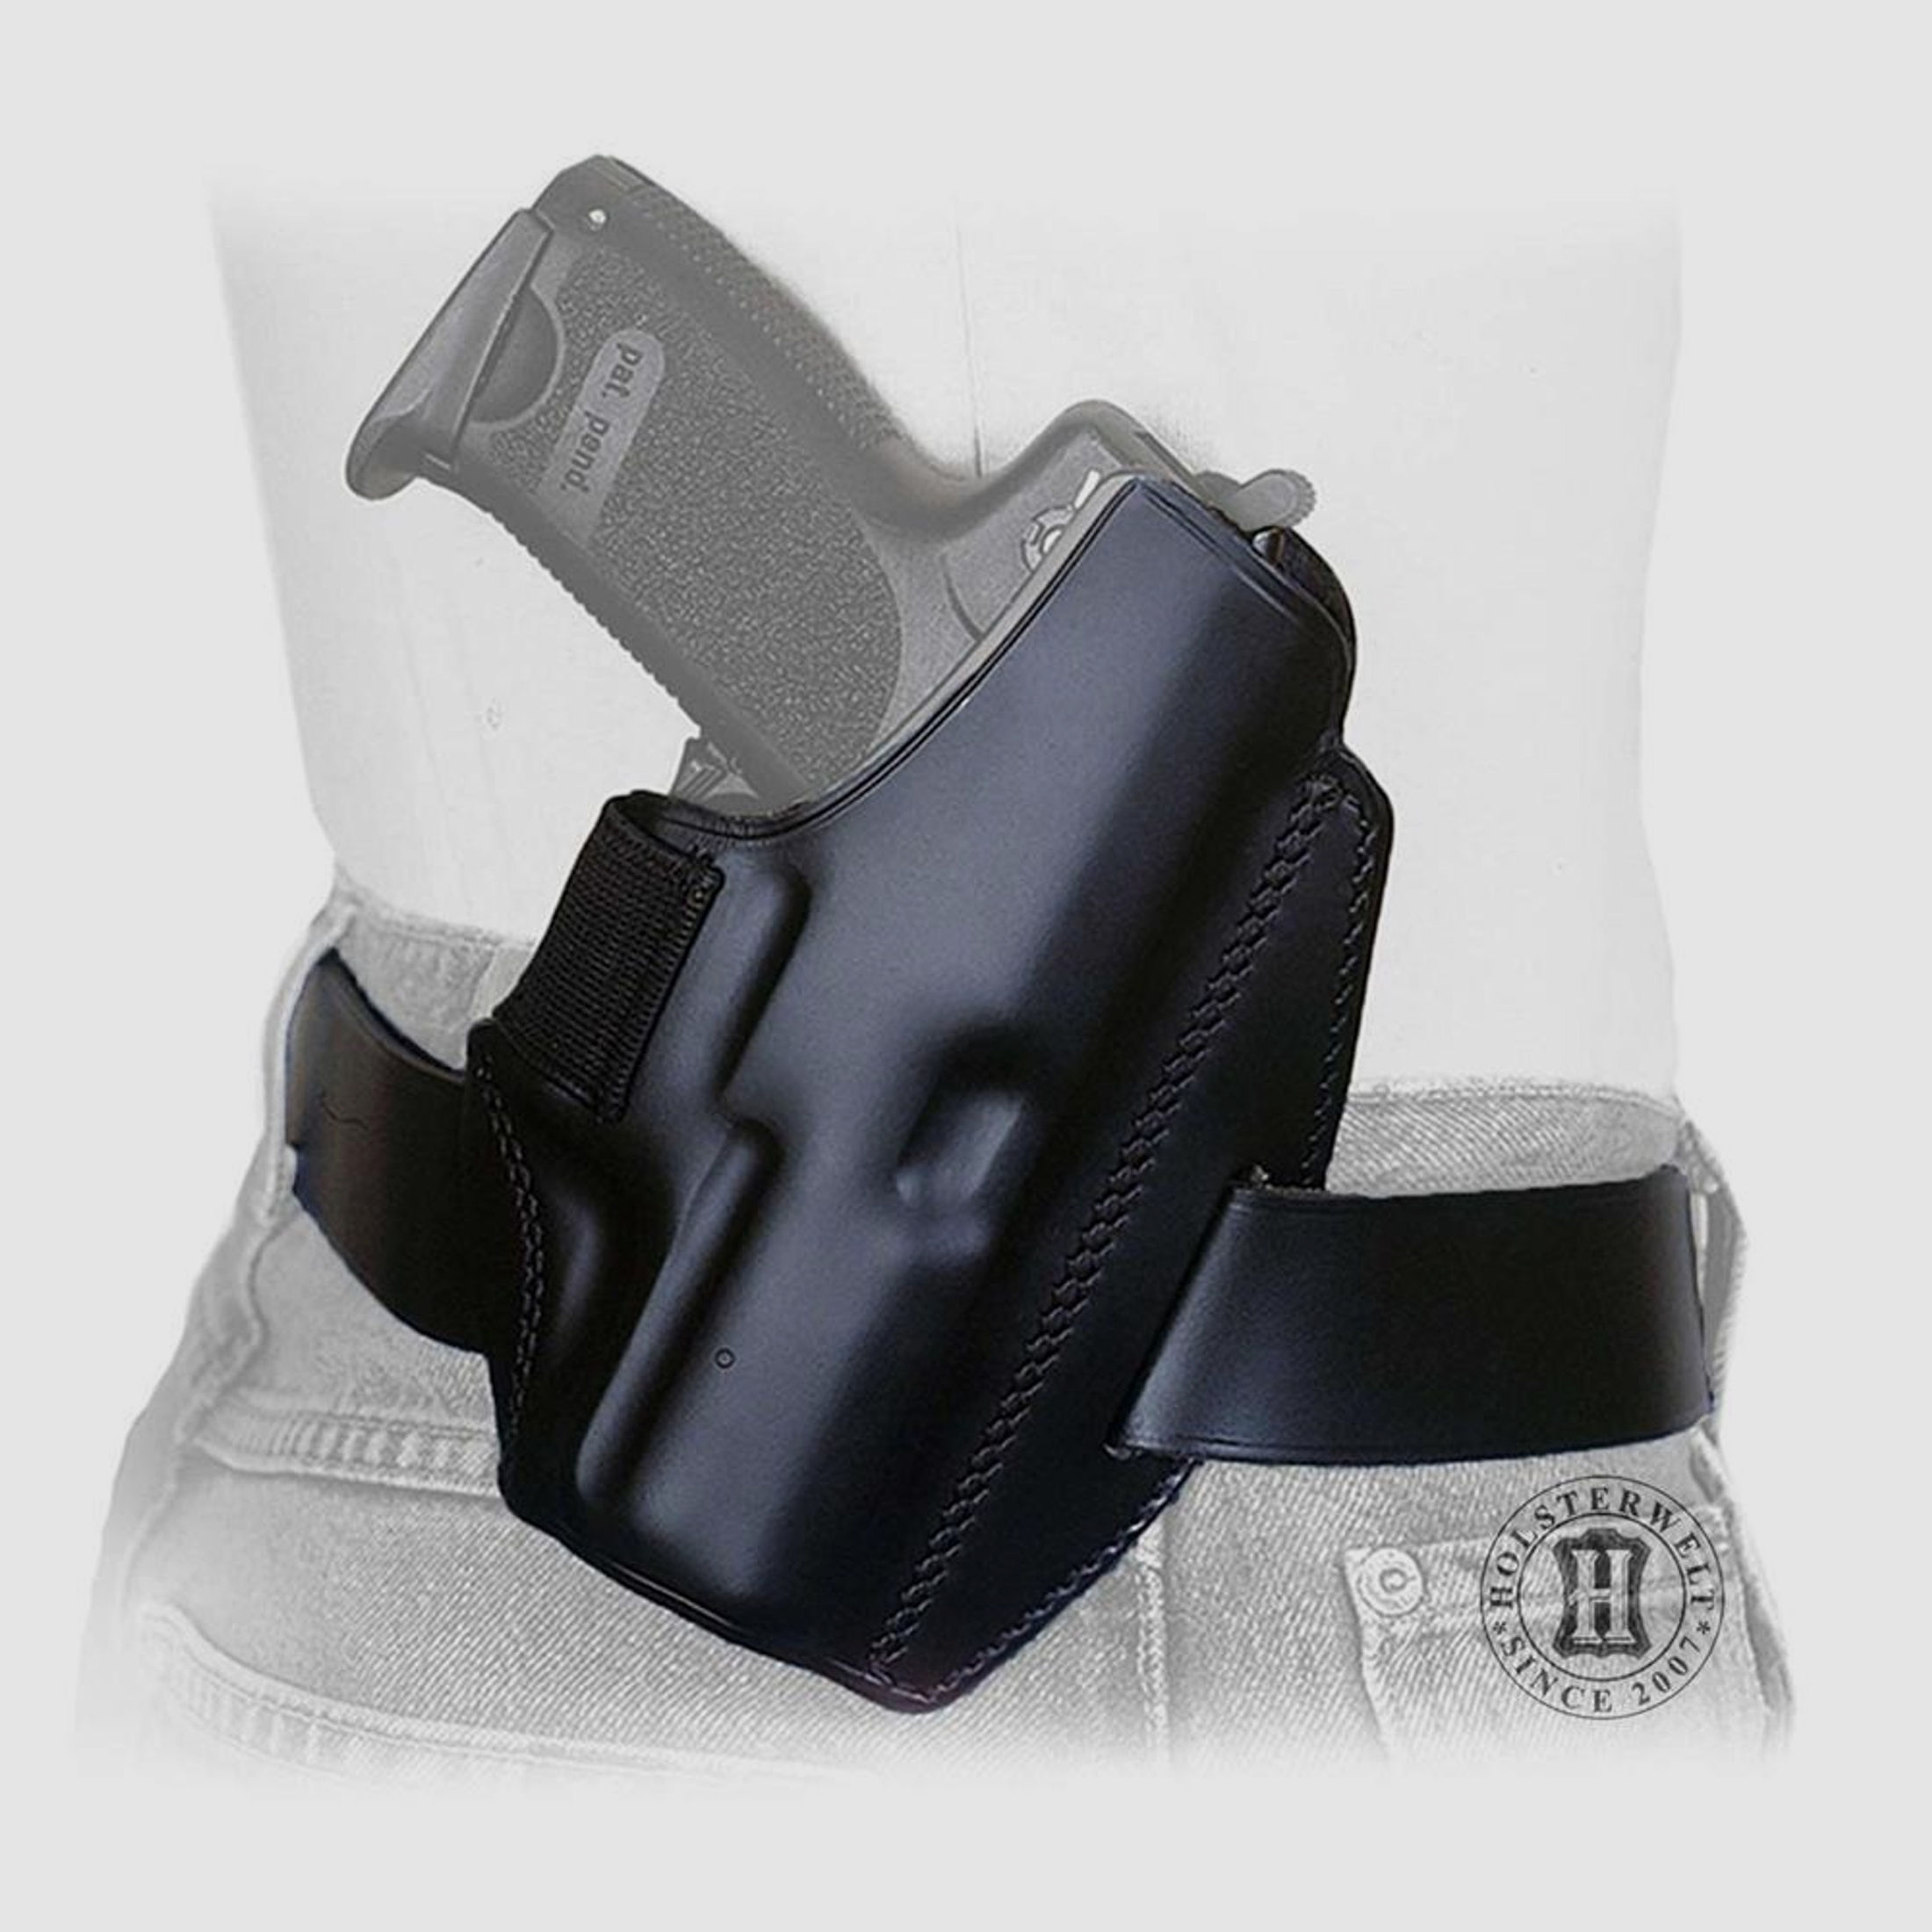 Gürtelholster QUICK DEFENSE Glock 29/30 Linkshänder